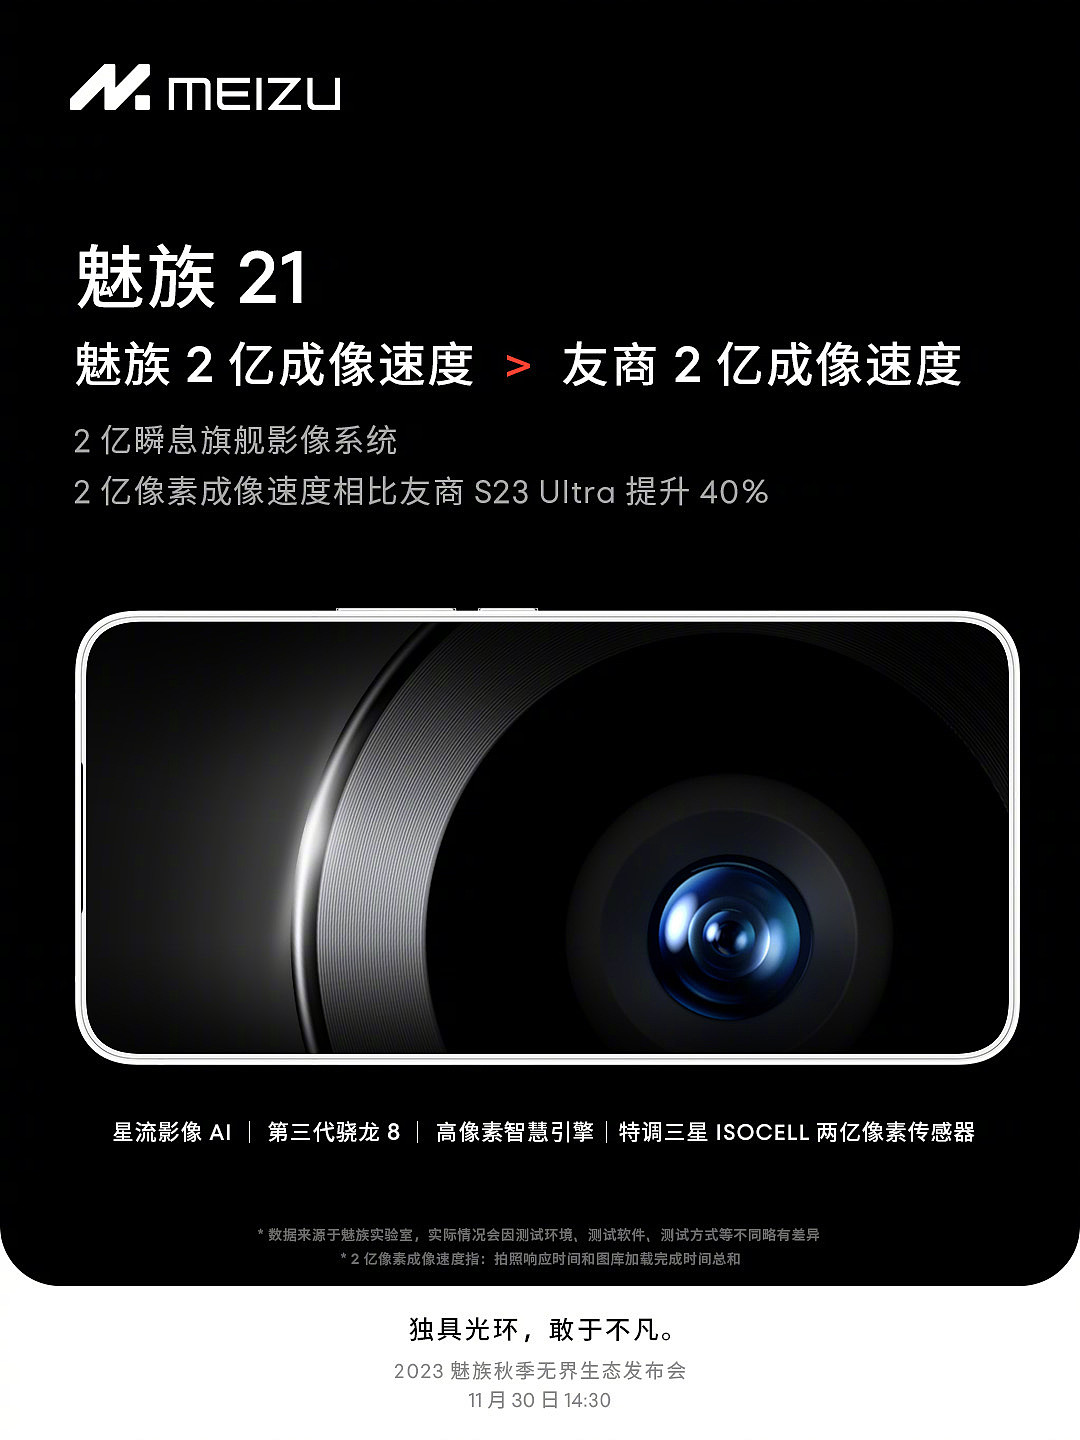 魅族 21 手机搭载 2 亿像素瞬息旗舰影像系统，称“成像速度较三星 S23 Ultra 提升 40%” - 1